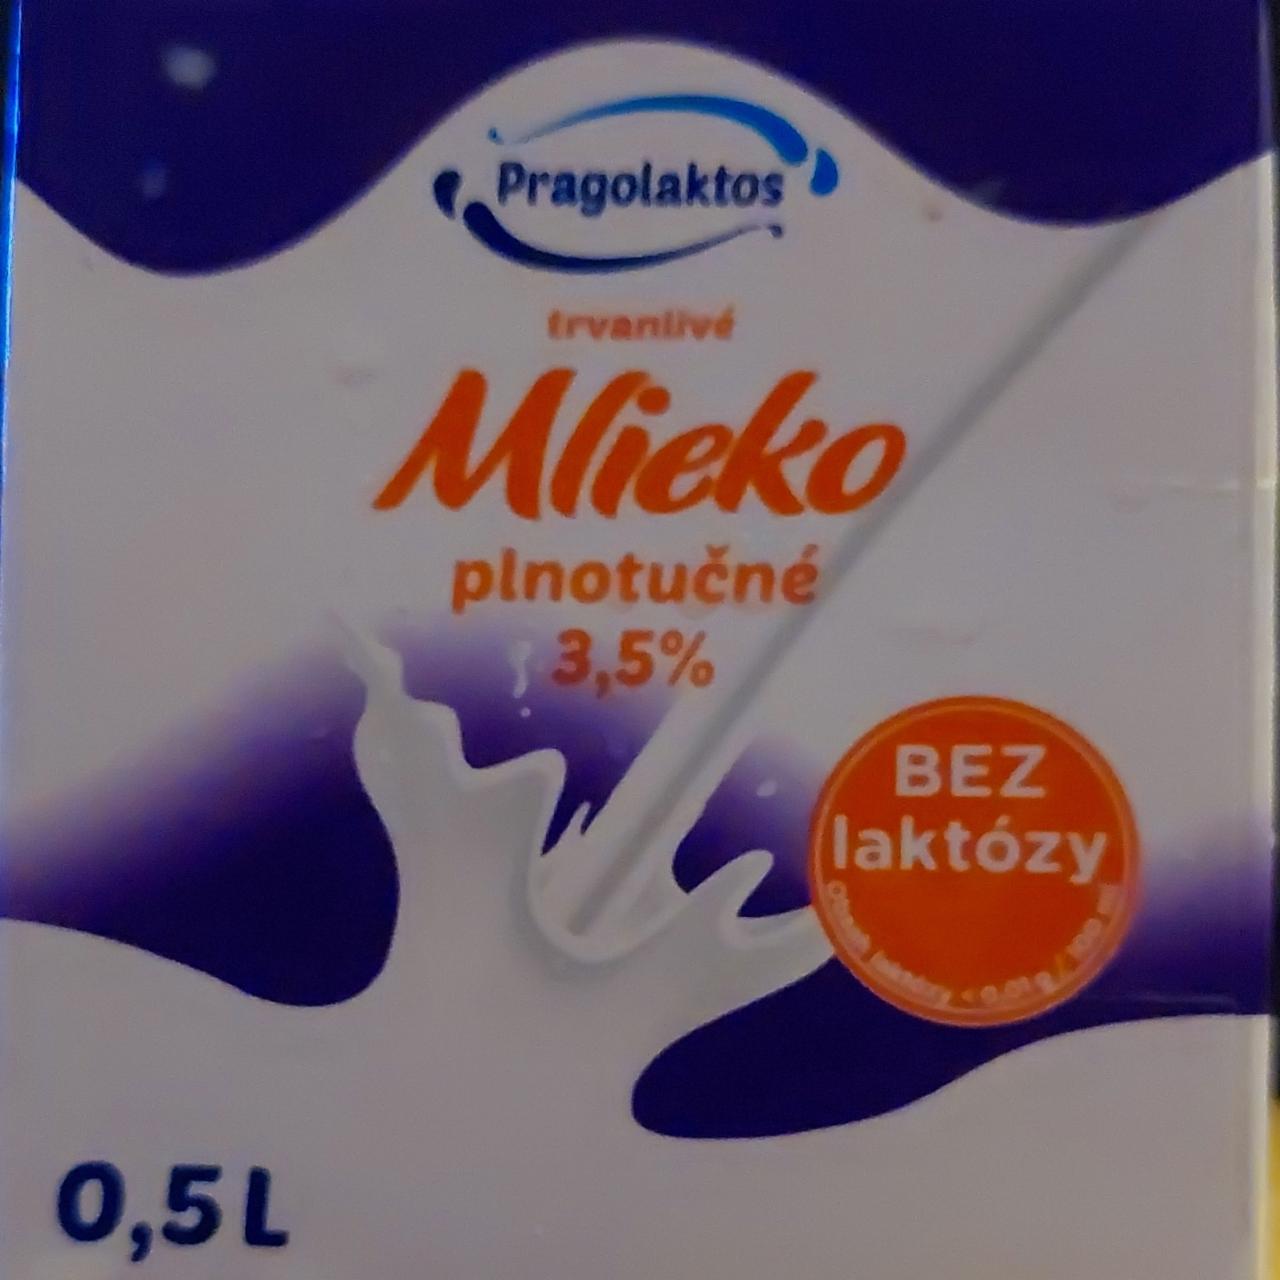 Fotografie - Mléko bez laktózy plnotučné Pragolaktos 3,5%